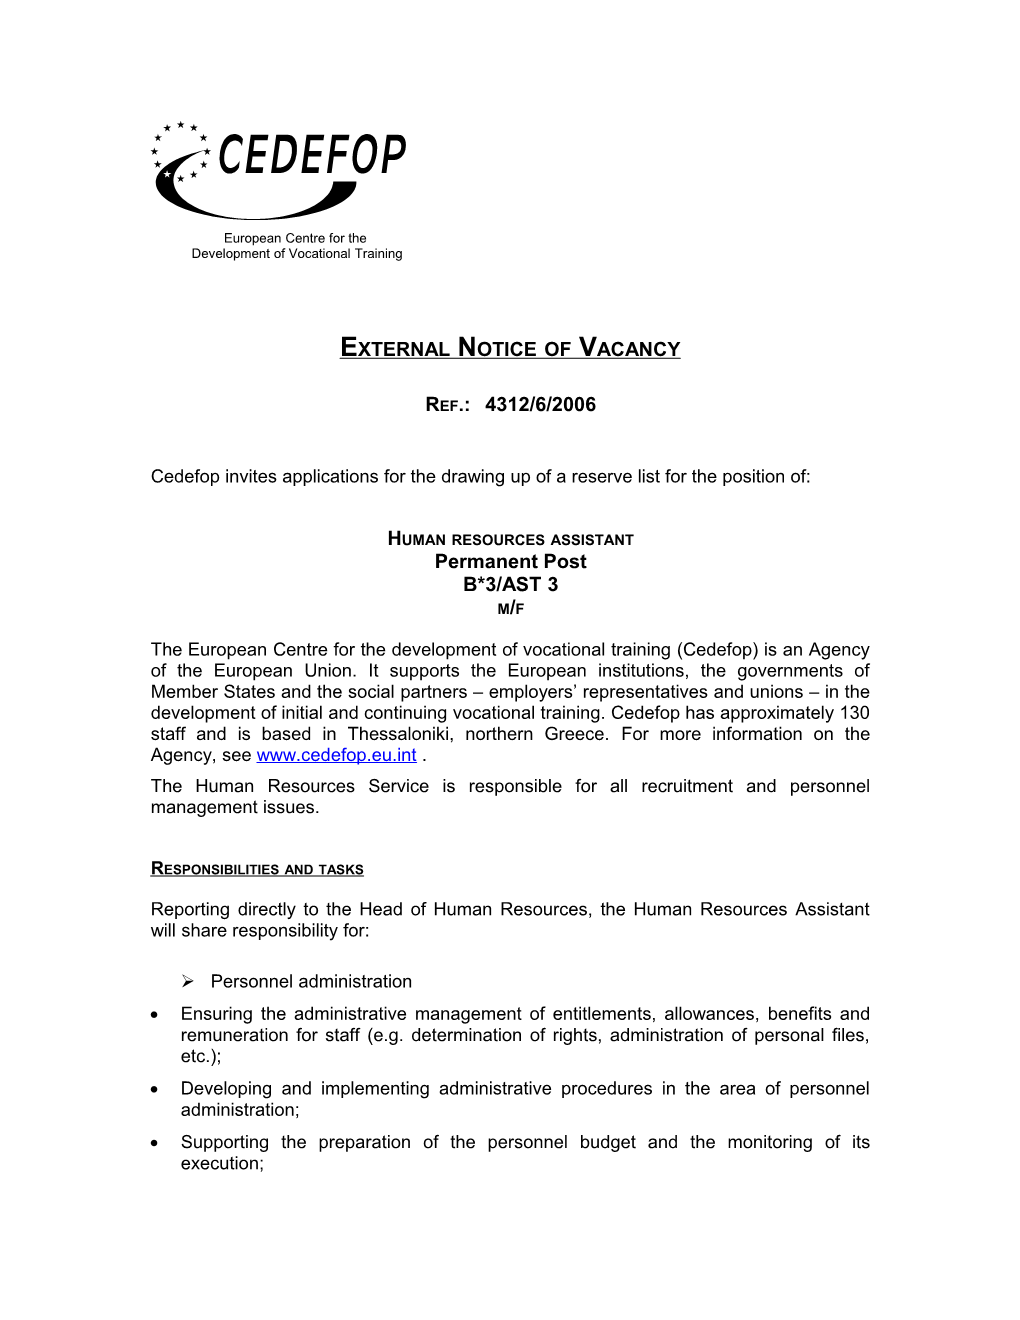 External Notice of Vacancy Ref.:4312/6/2006